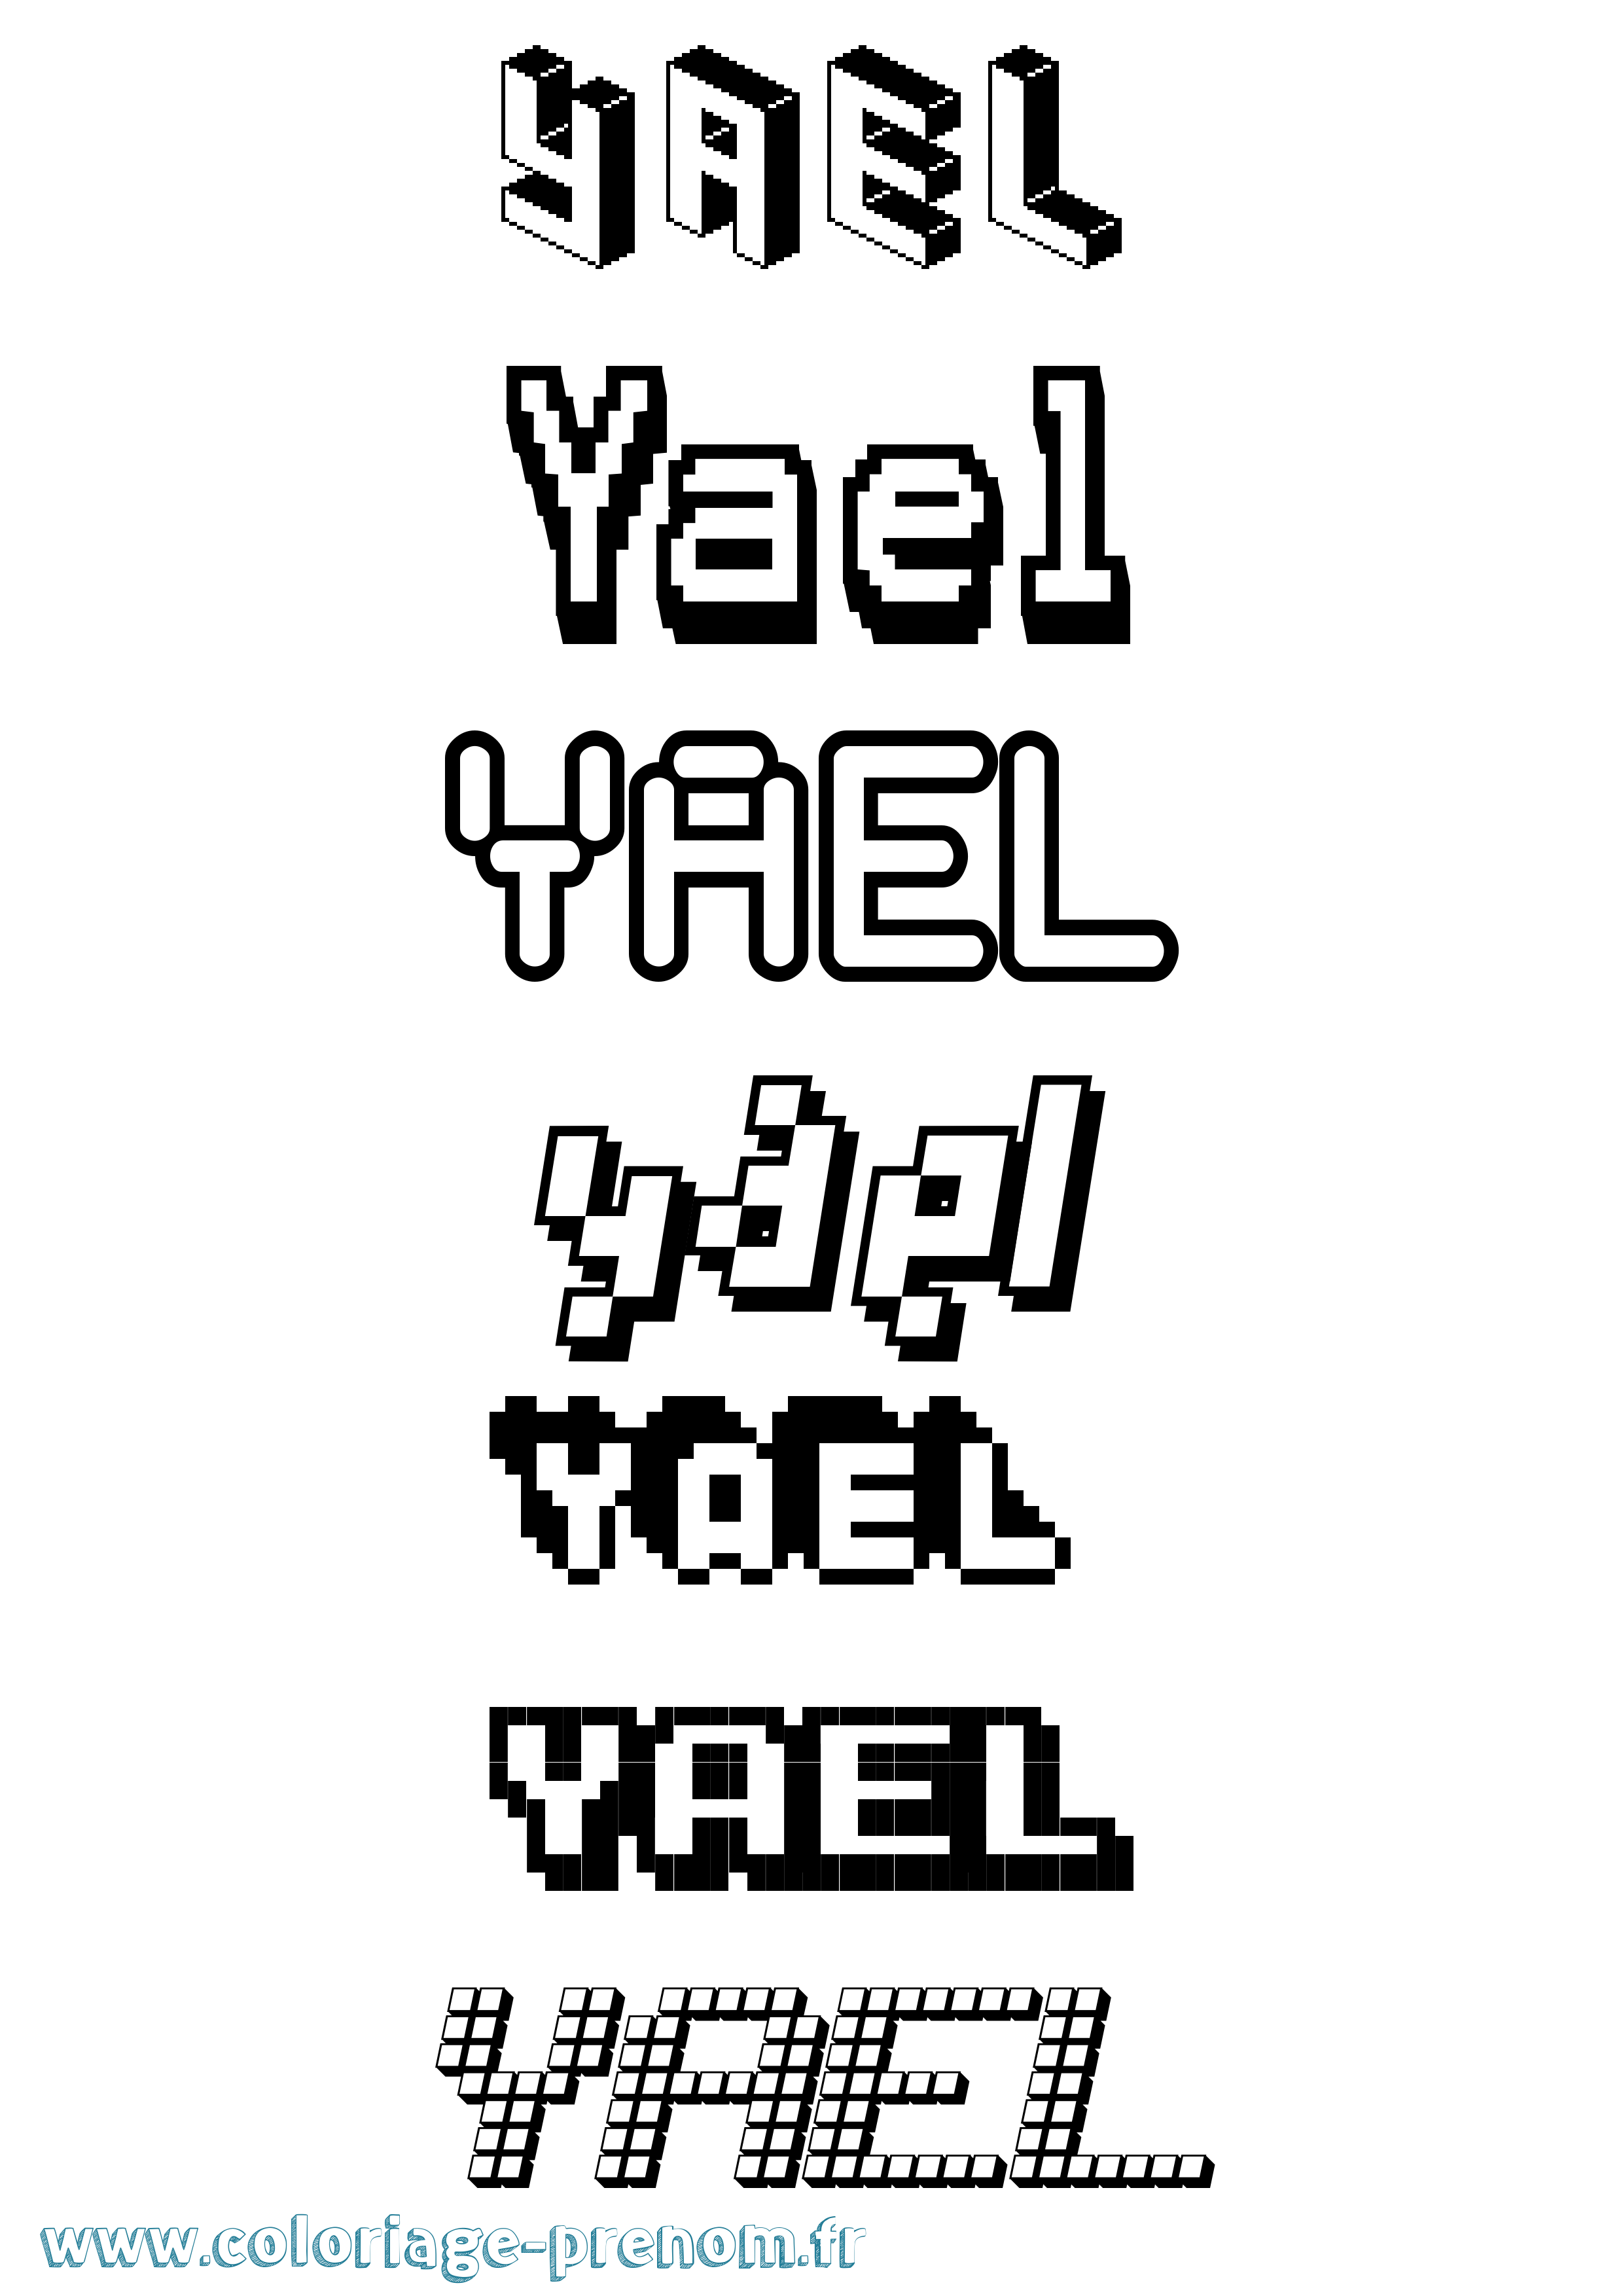 Coloriage prénom Yael Pixel